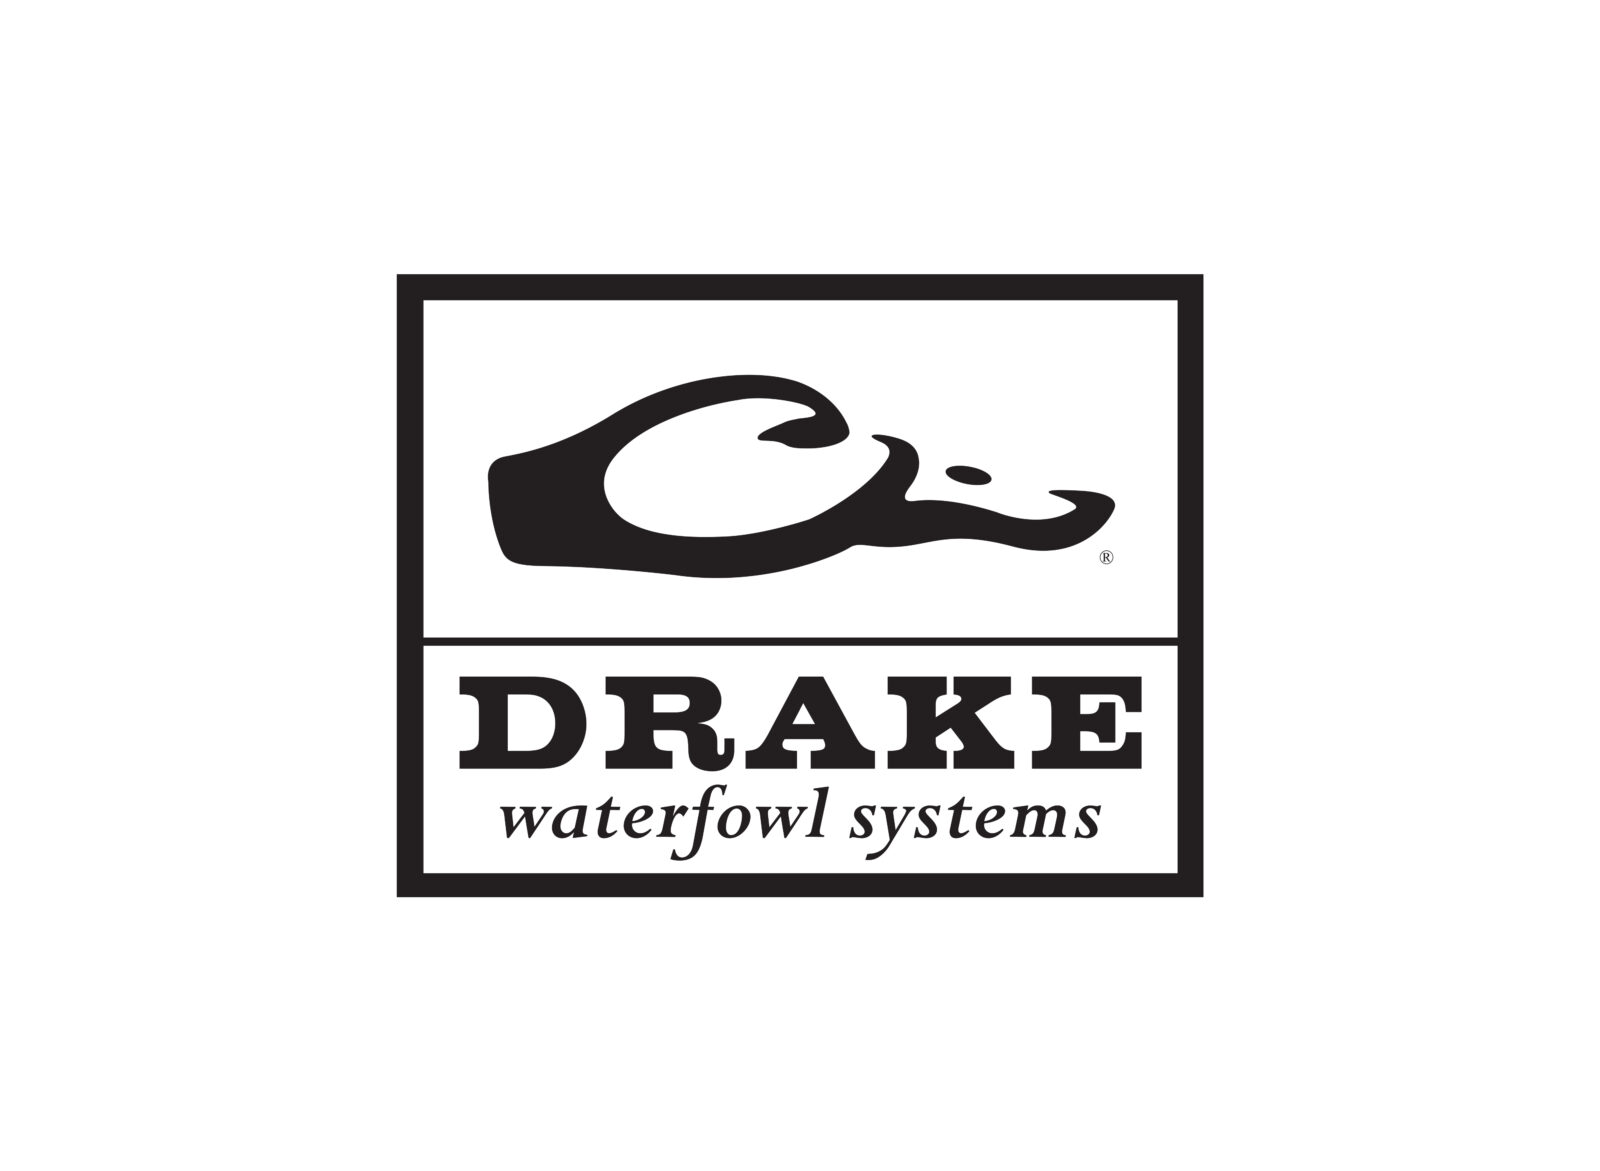 drake waterfowl